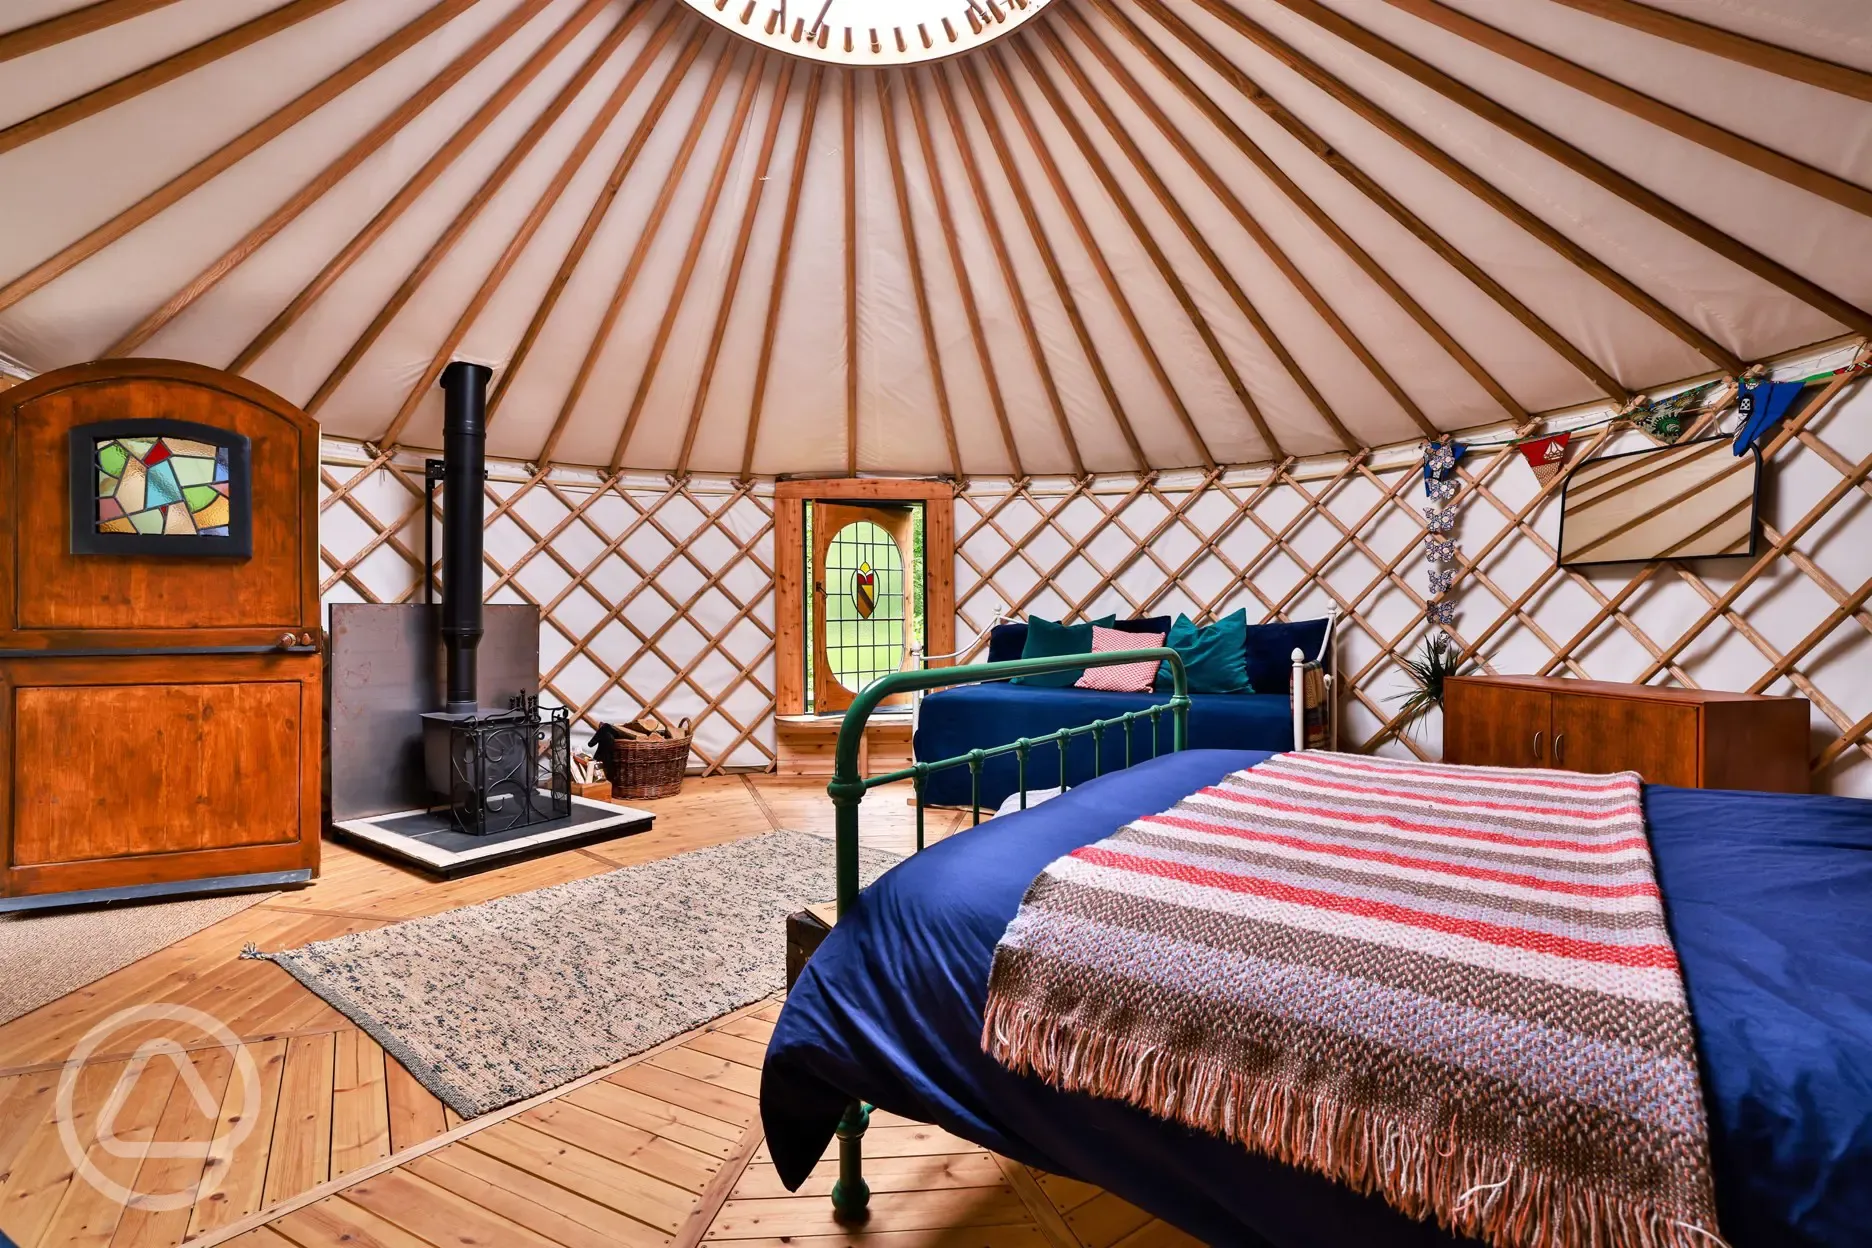 Bert the yurt interior